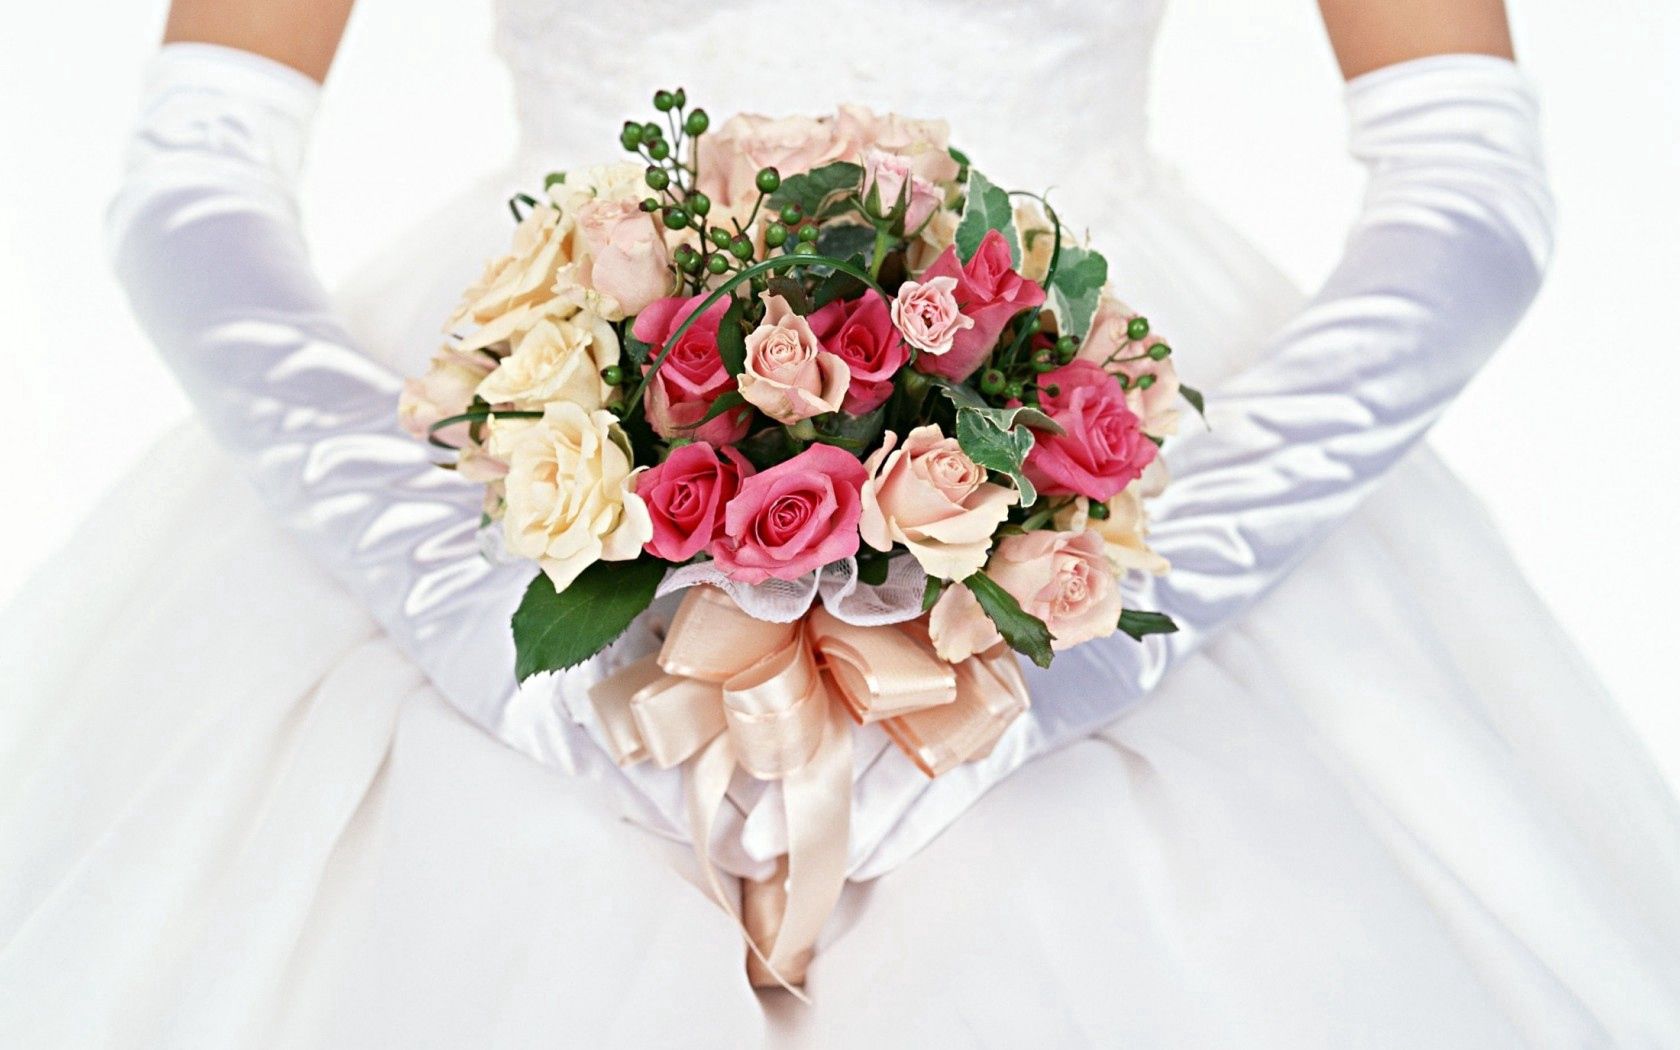 desktop Images roses, miscellanea, miscellaneous, bouquet, gloves, bride